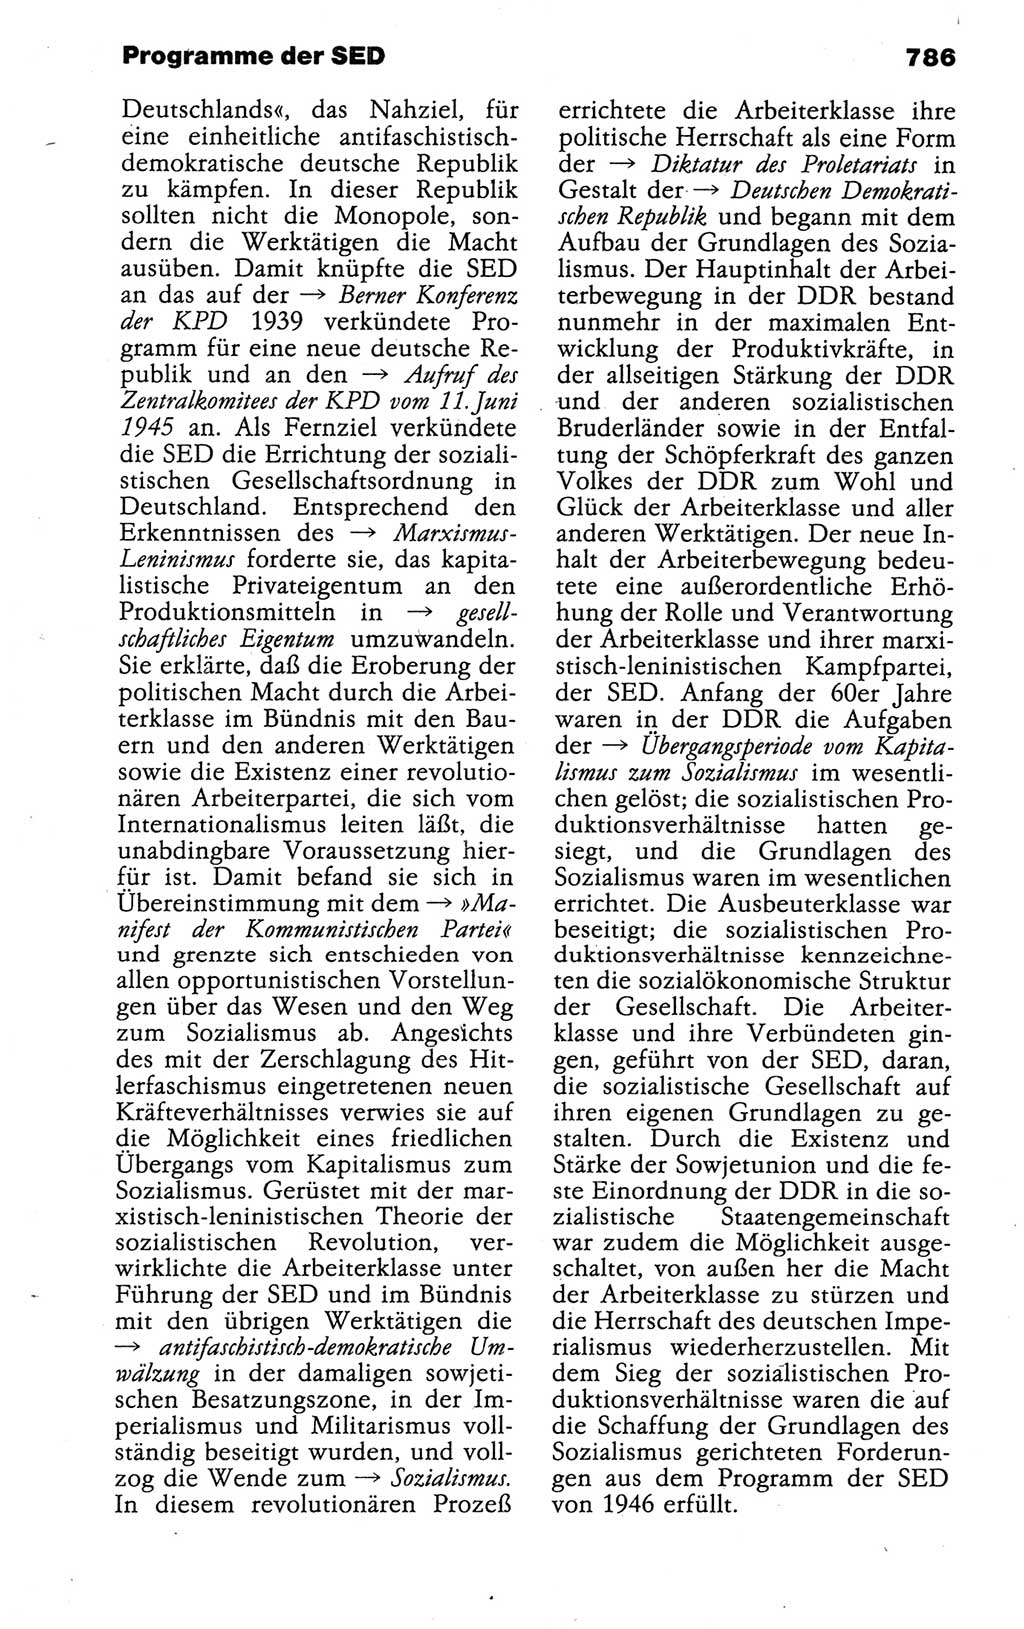 Kleines politisches Wörterbuch [Deutsche Demokratische Republik (DDR)] 1988, Seite 786 (Kl. pol. Wb. DDR 1988, S. 786)